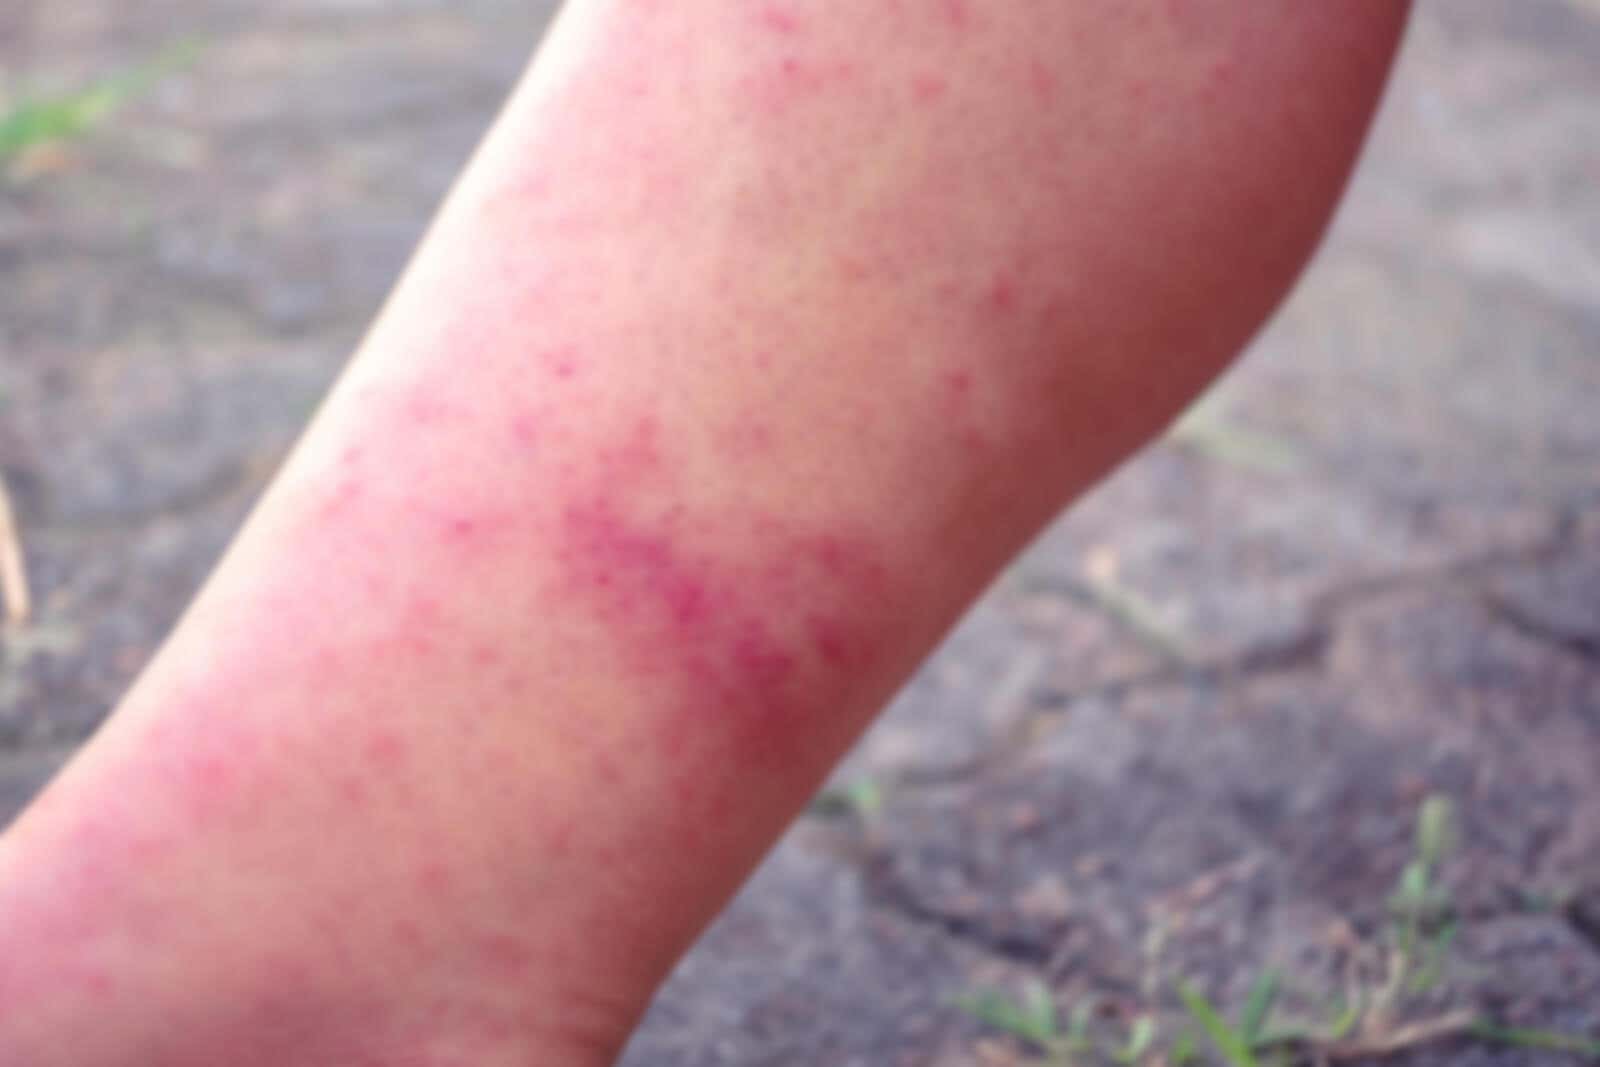 Dermatitis en la pierna por depilación con cera.